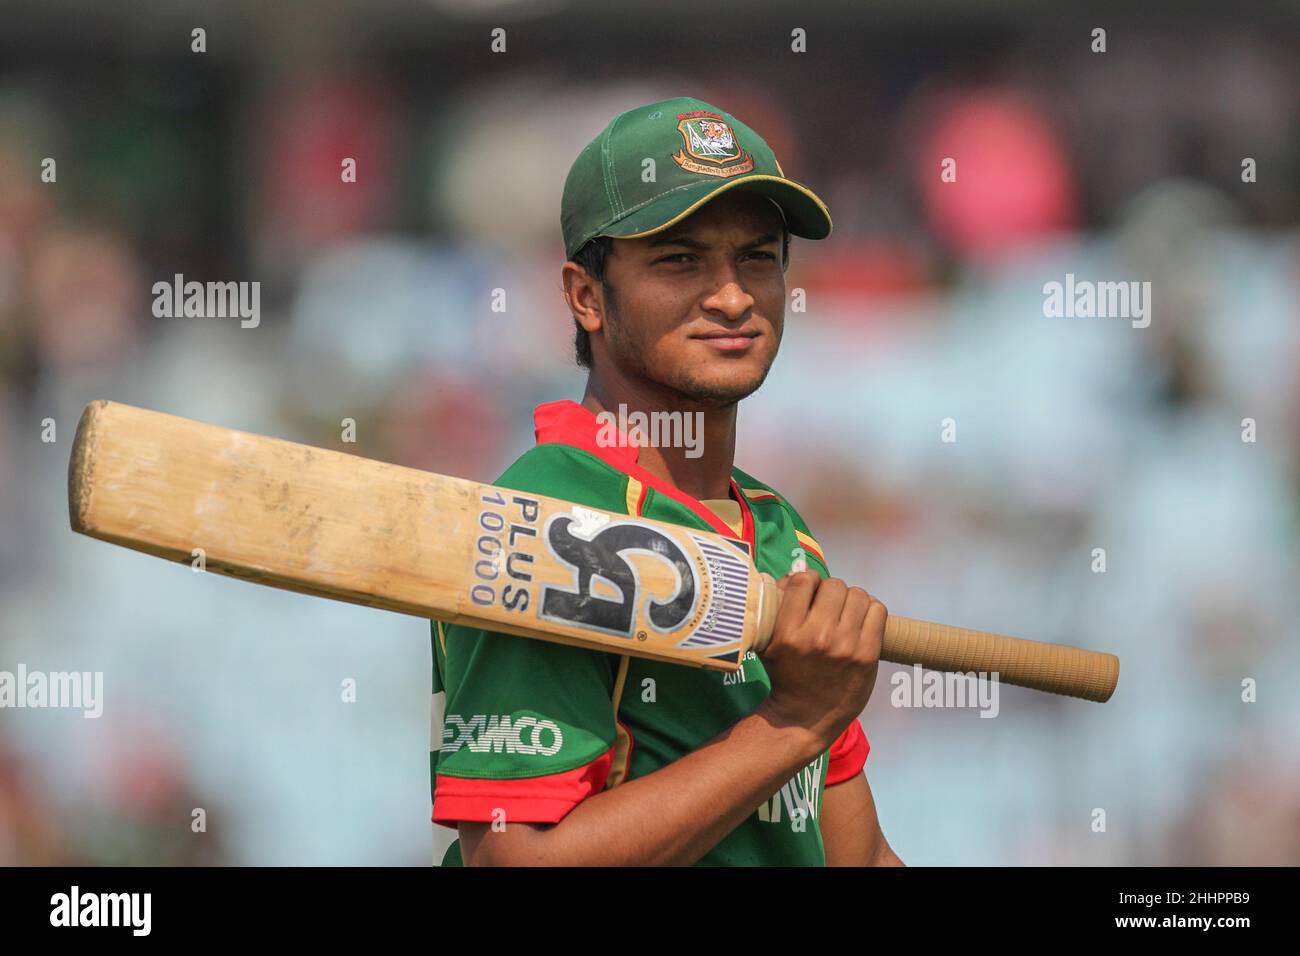 Bangladesh Cricket-Spieler, Shakib Al Hasan in Aktion während des Spiels 28th, ICC (International Cricket Council) Cricket World Cup zwischen England und Bangladesch in Chittagong. Bangladesch gewann mit 2 Wickets (mit 6 verbleibenden Bällen). Stockfoto